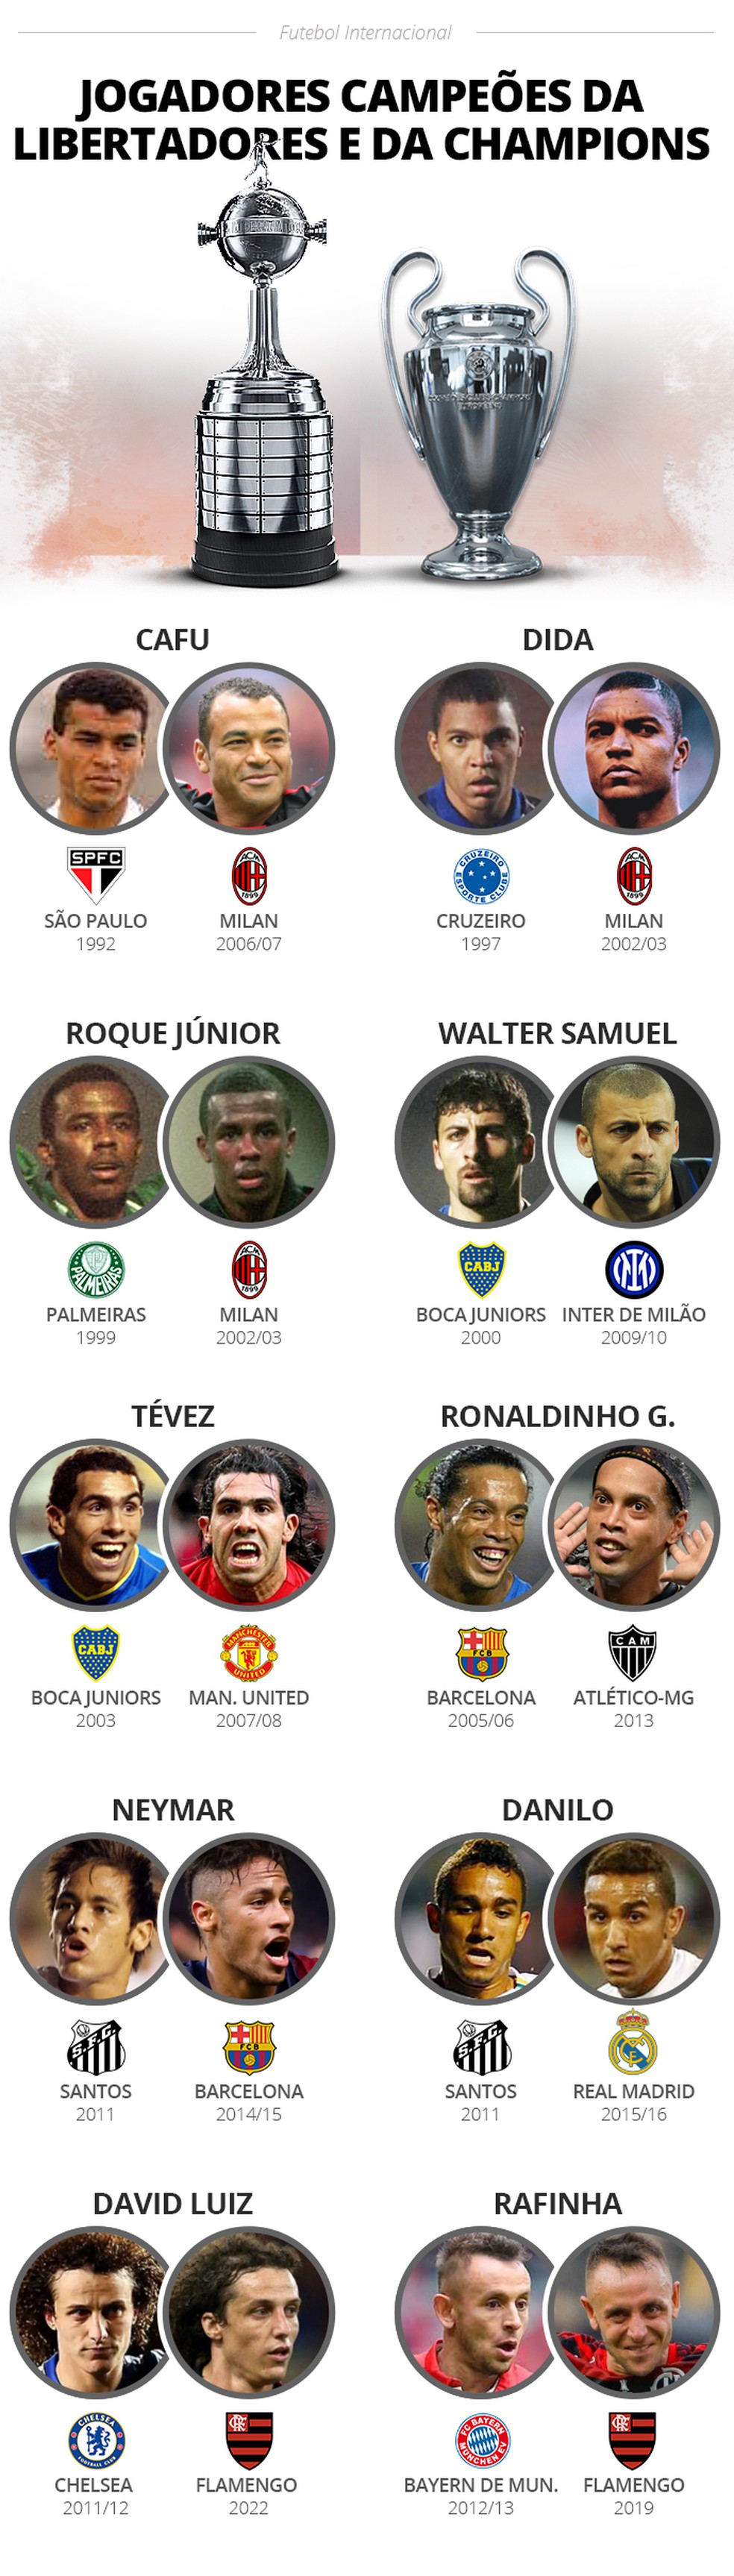 Os jogadores que mais ganharam a Champions League